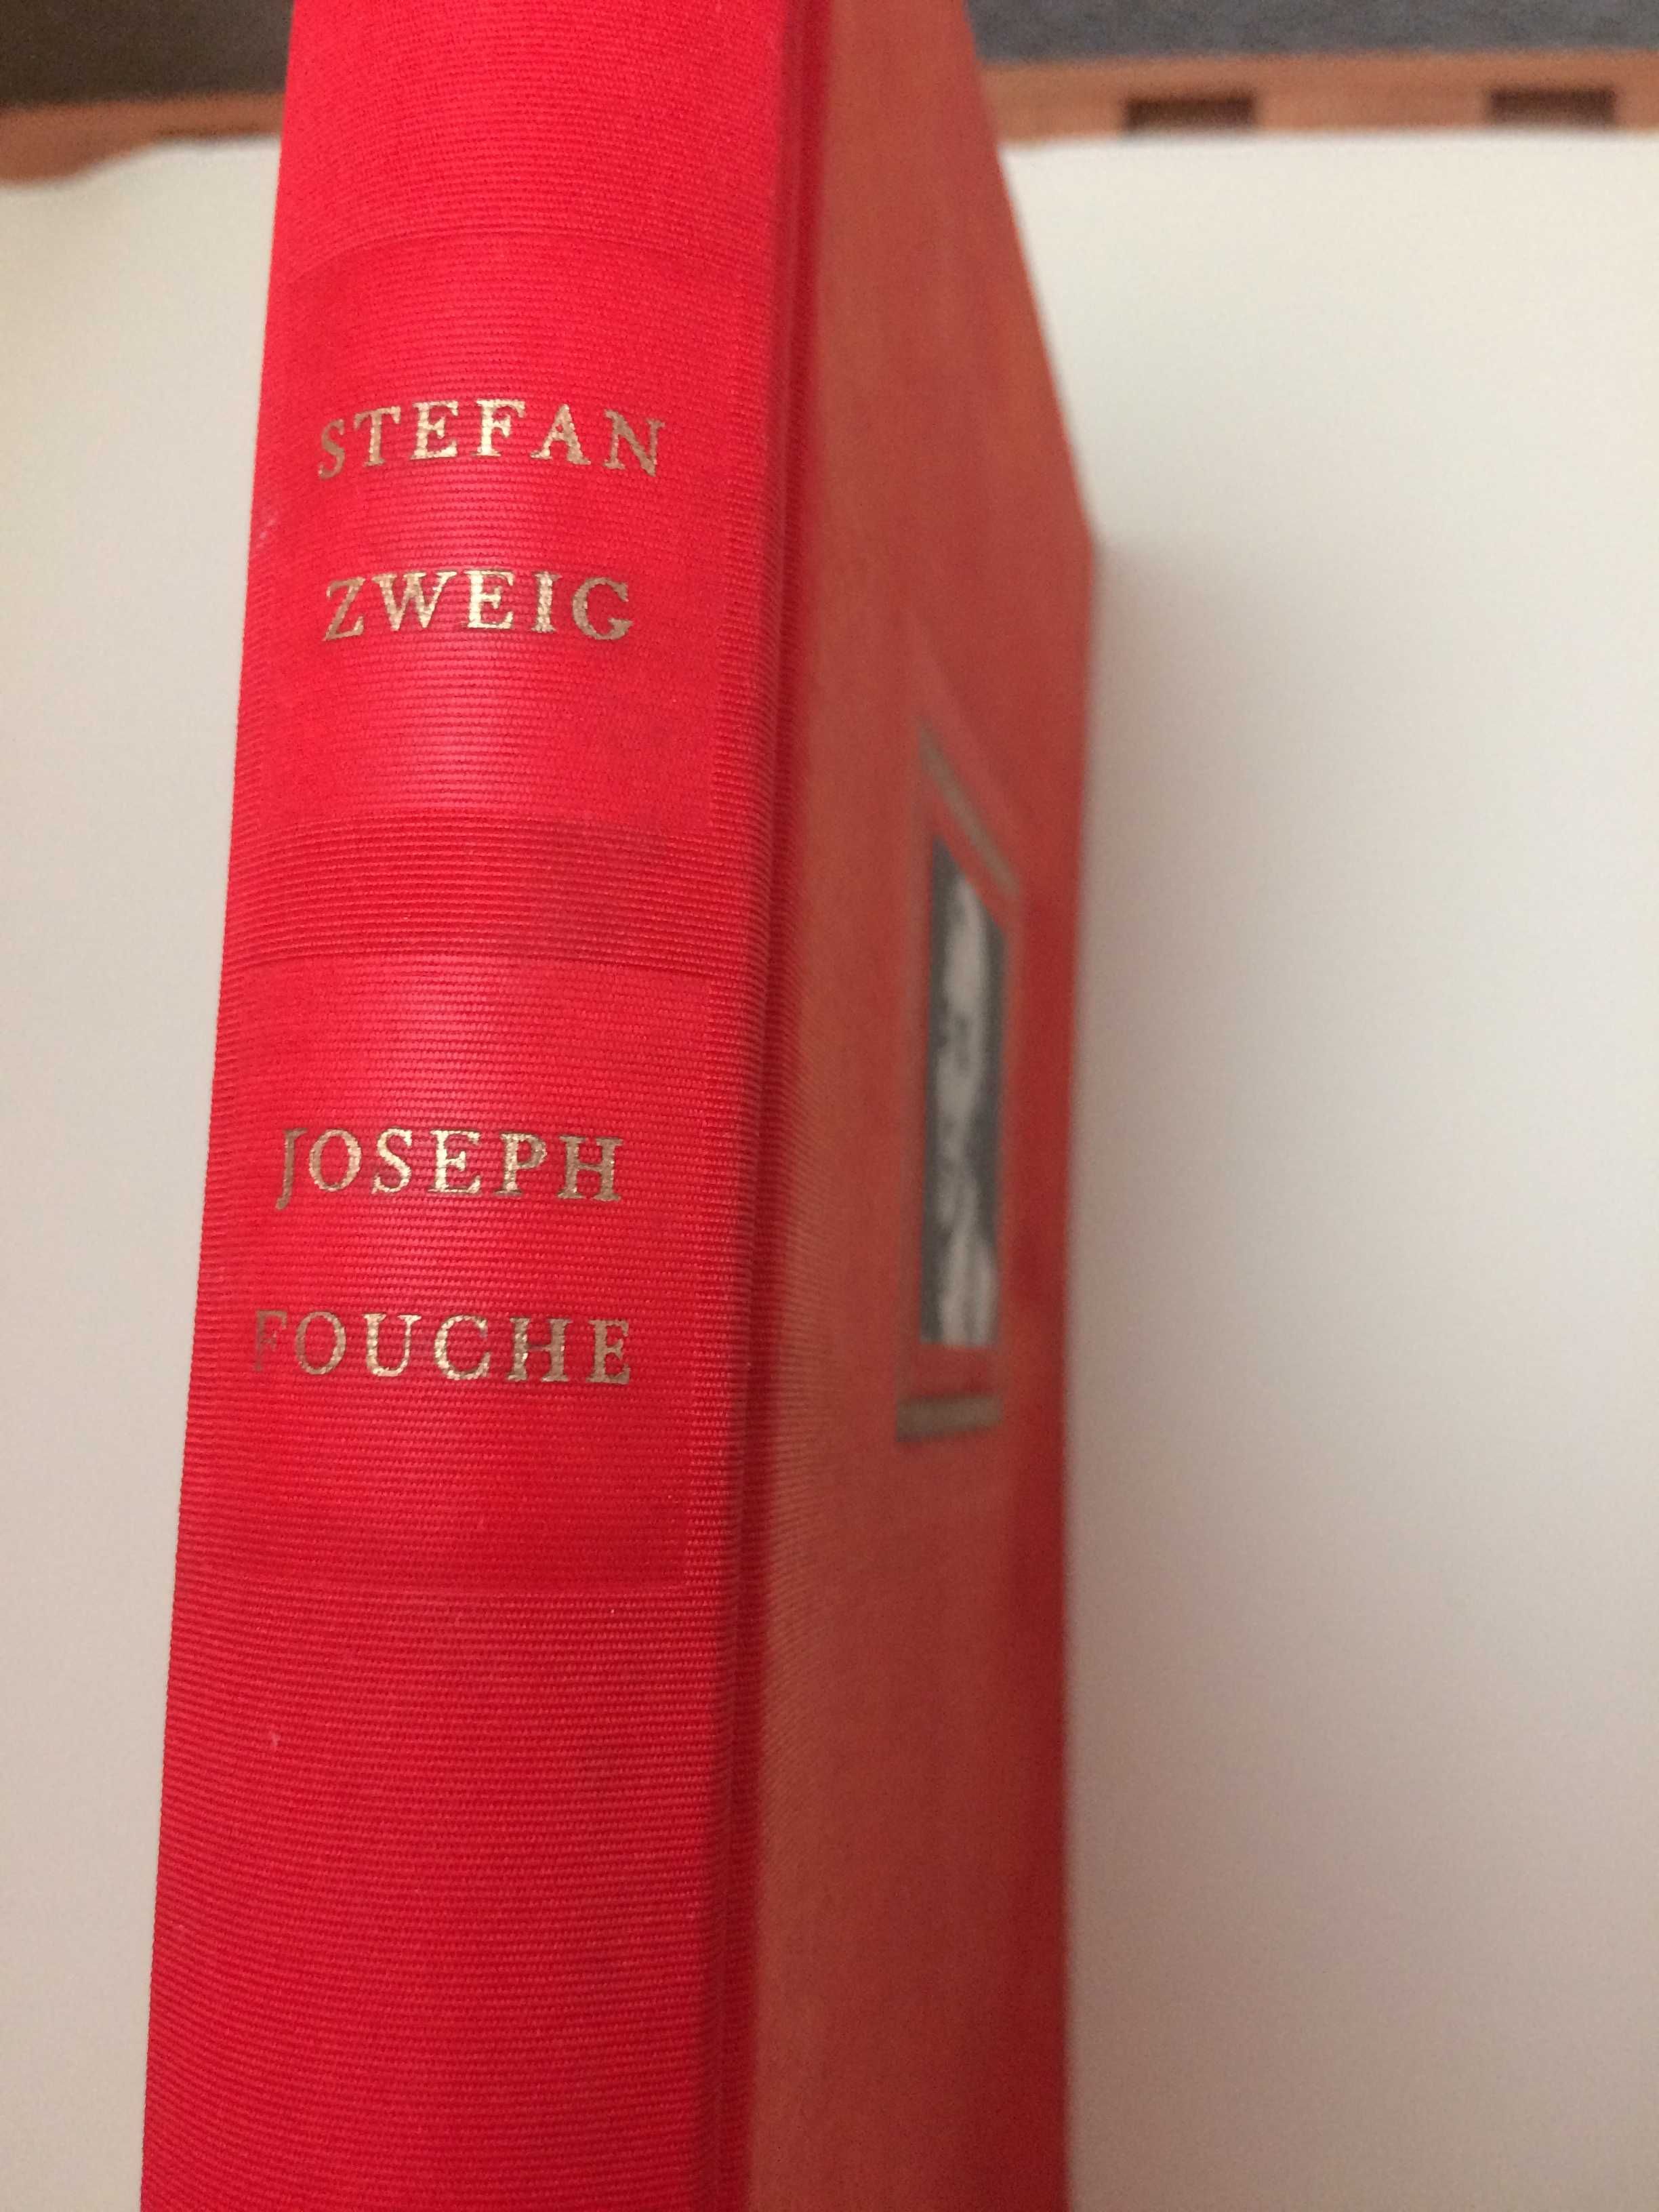 Stefan Zweig - Joseph Fouché, Livro de 1957